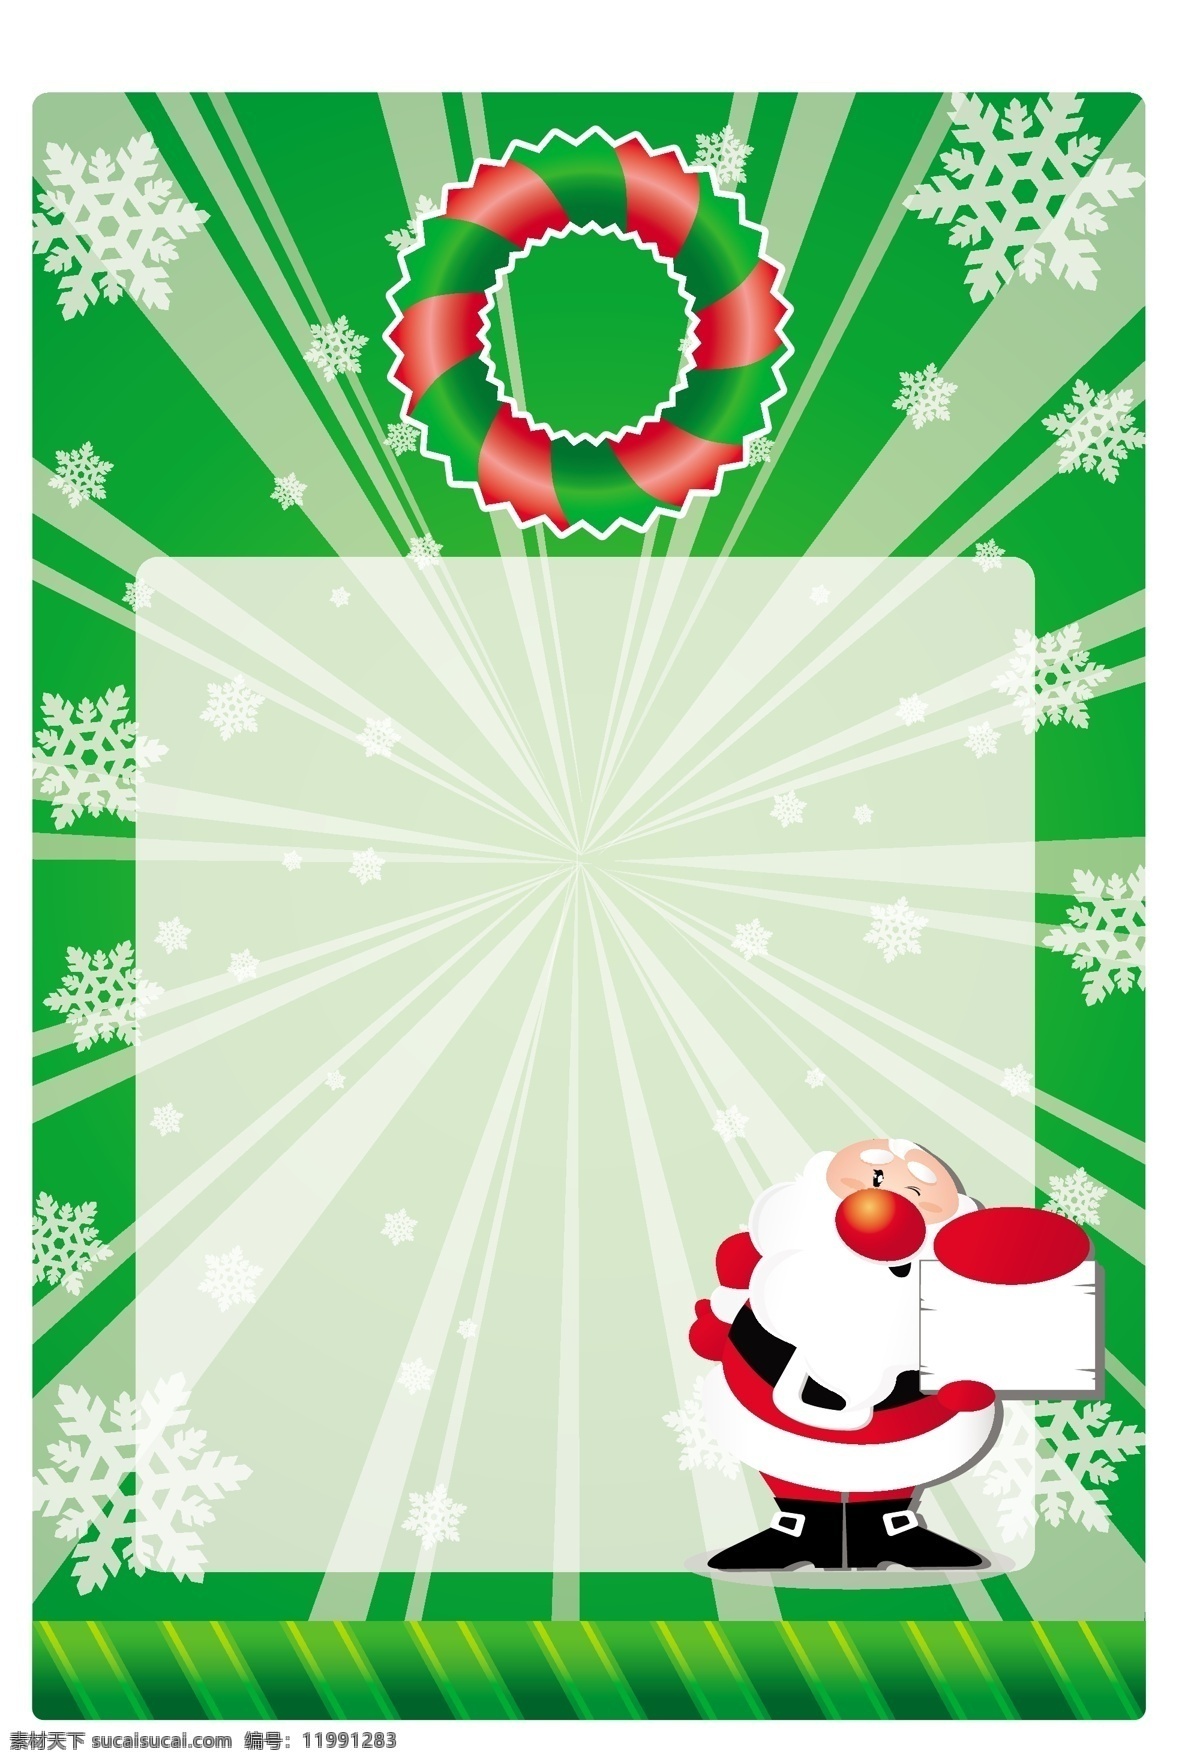 绿色 圣诞卡 圣诞老人 雪花 摘要背景壁纸 庆典和聚会 圣诞节 设计元素 节假日 季节性 装饰装潢 模板和模型